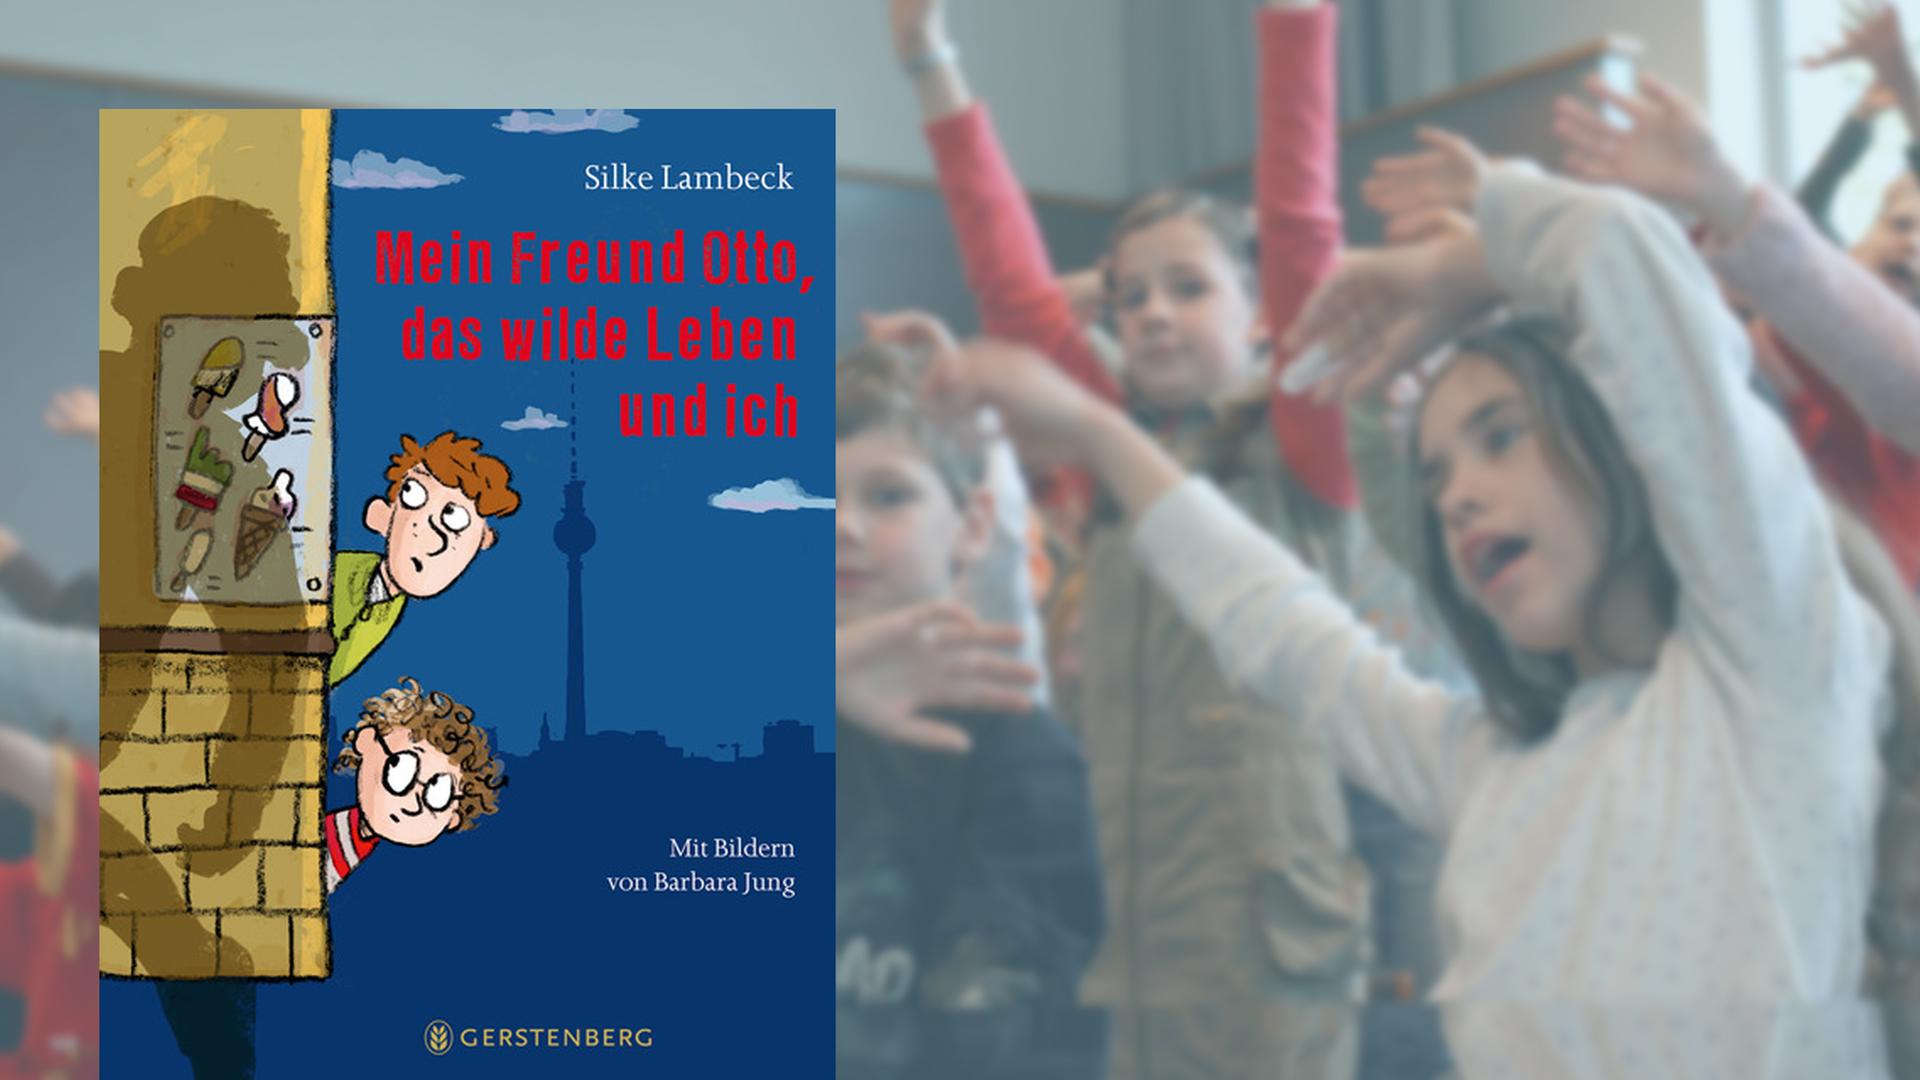 Cover von Silke Lambecks Kinderbuch "Mein Freund Otto, das wilde Leben und ich"